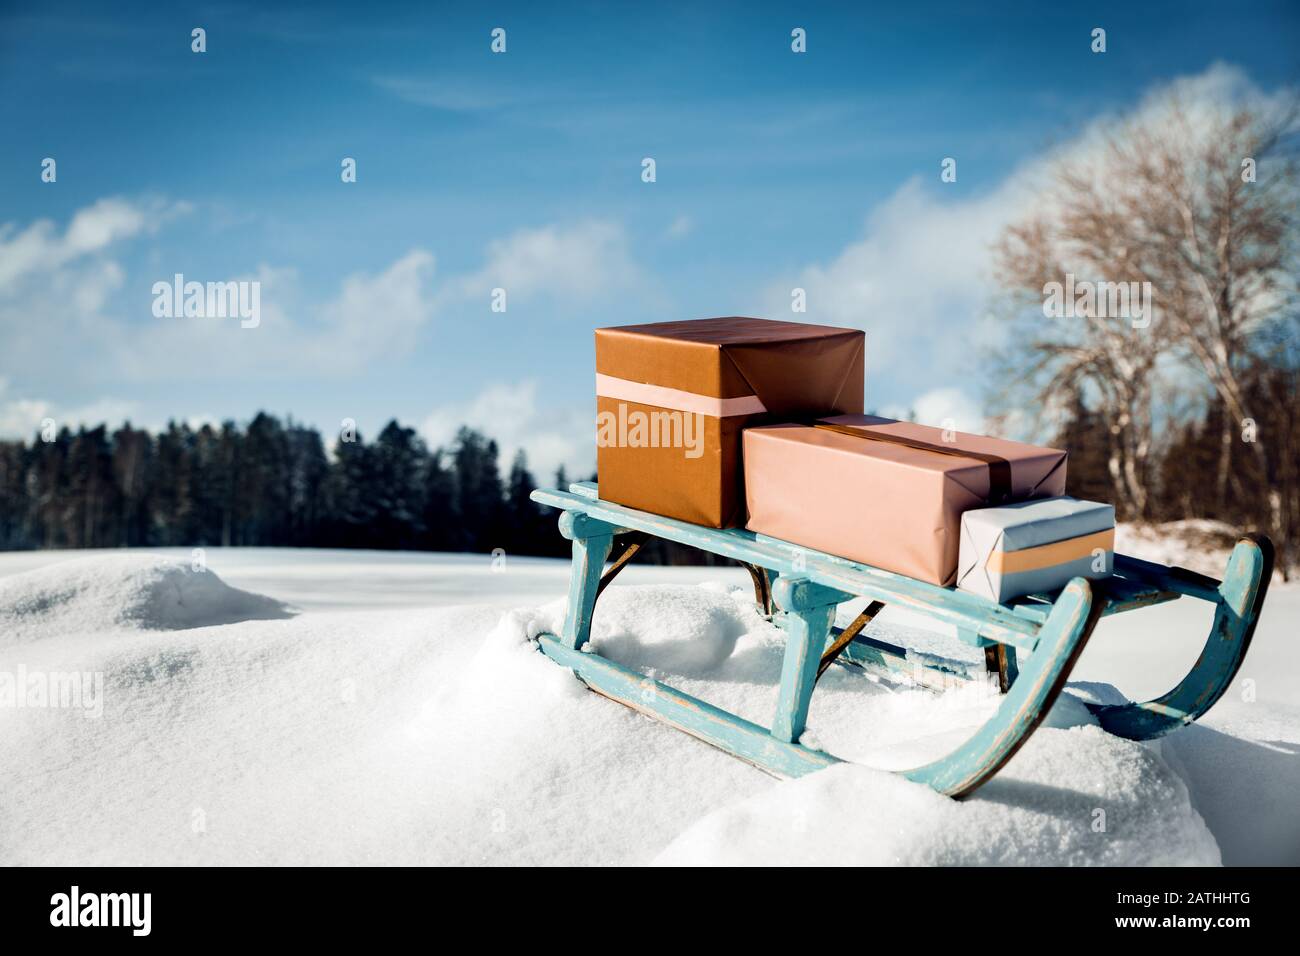 Cadeaux sur un traîneau à chiches en forme de chabby devant le paysage hivernal enneigé, concept de noël Banque D'Images